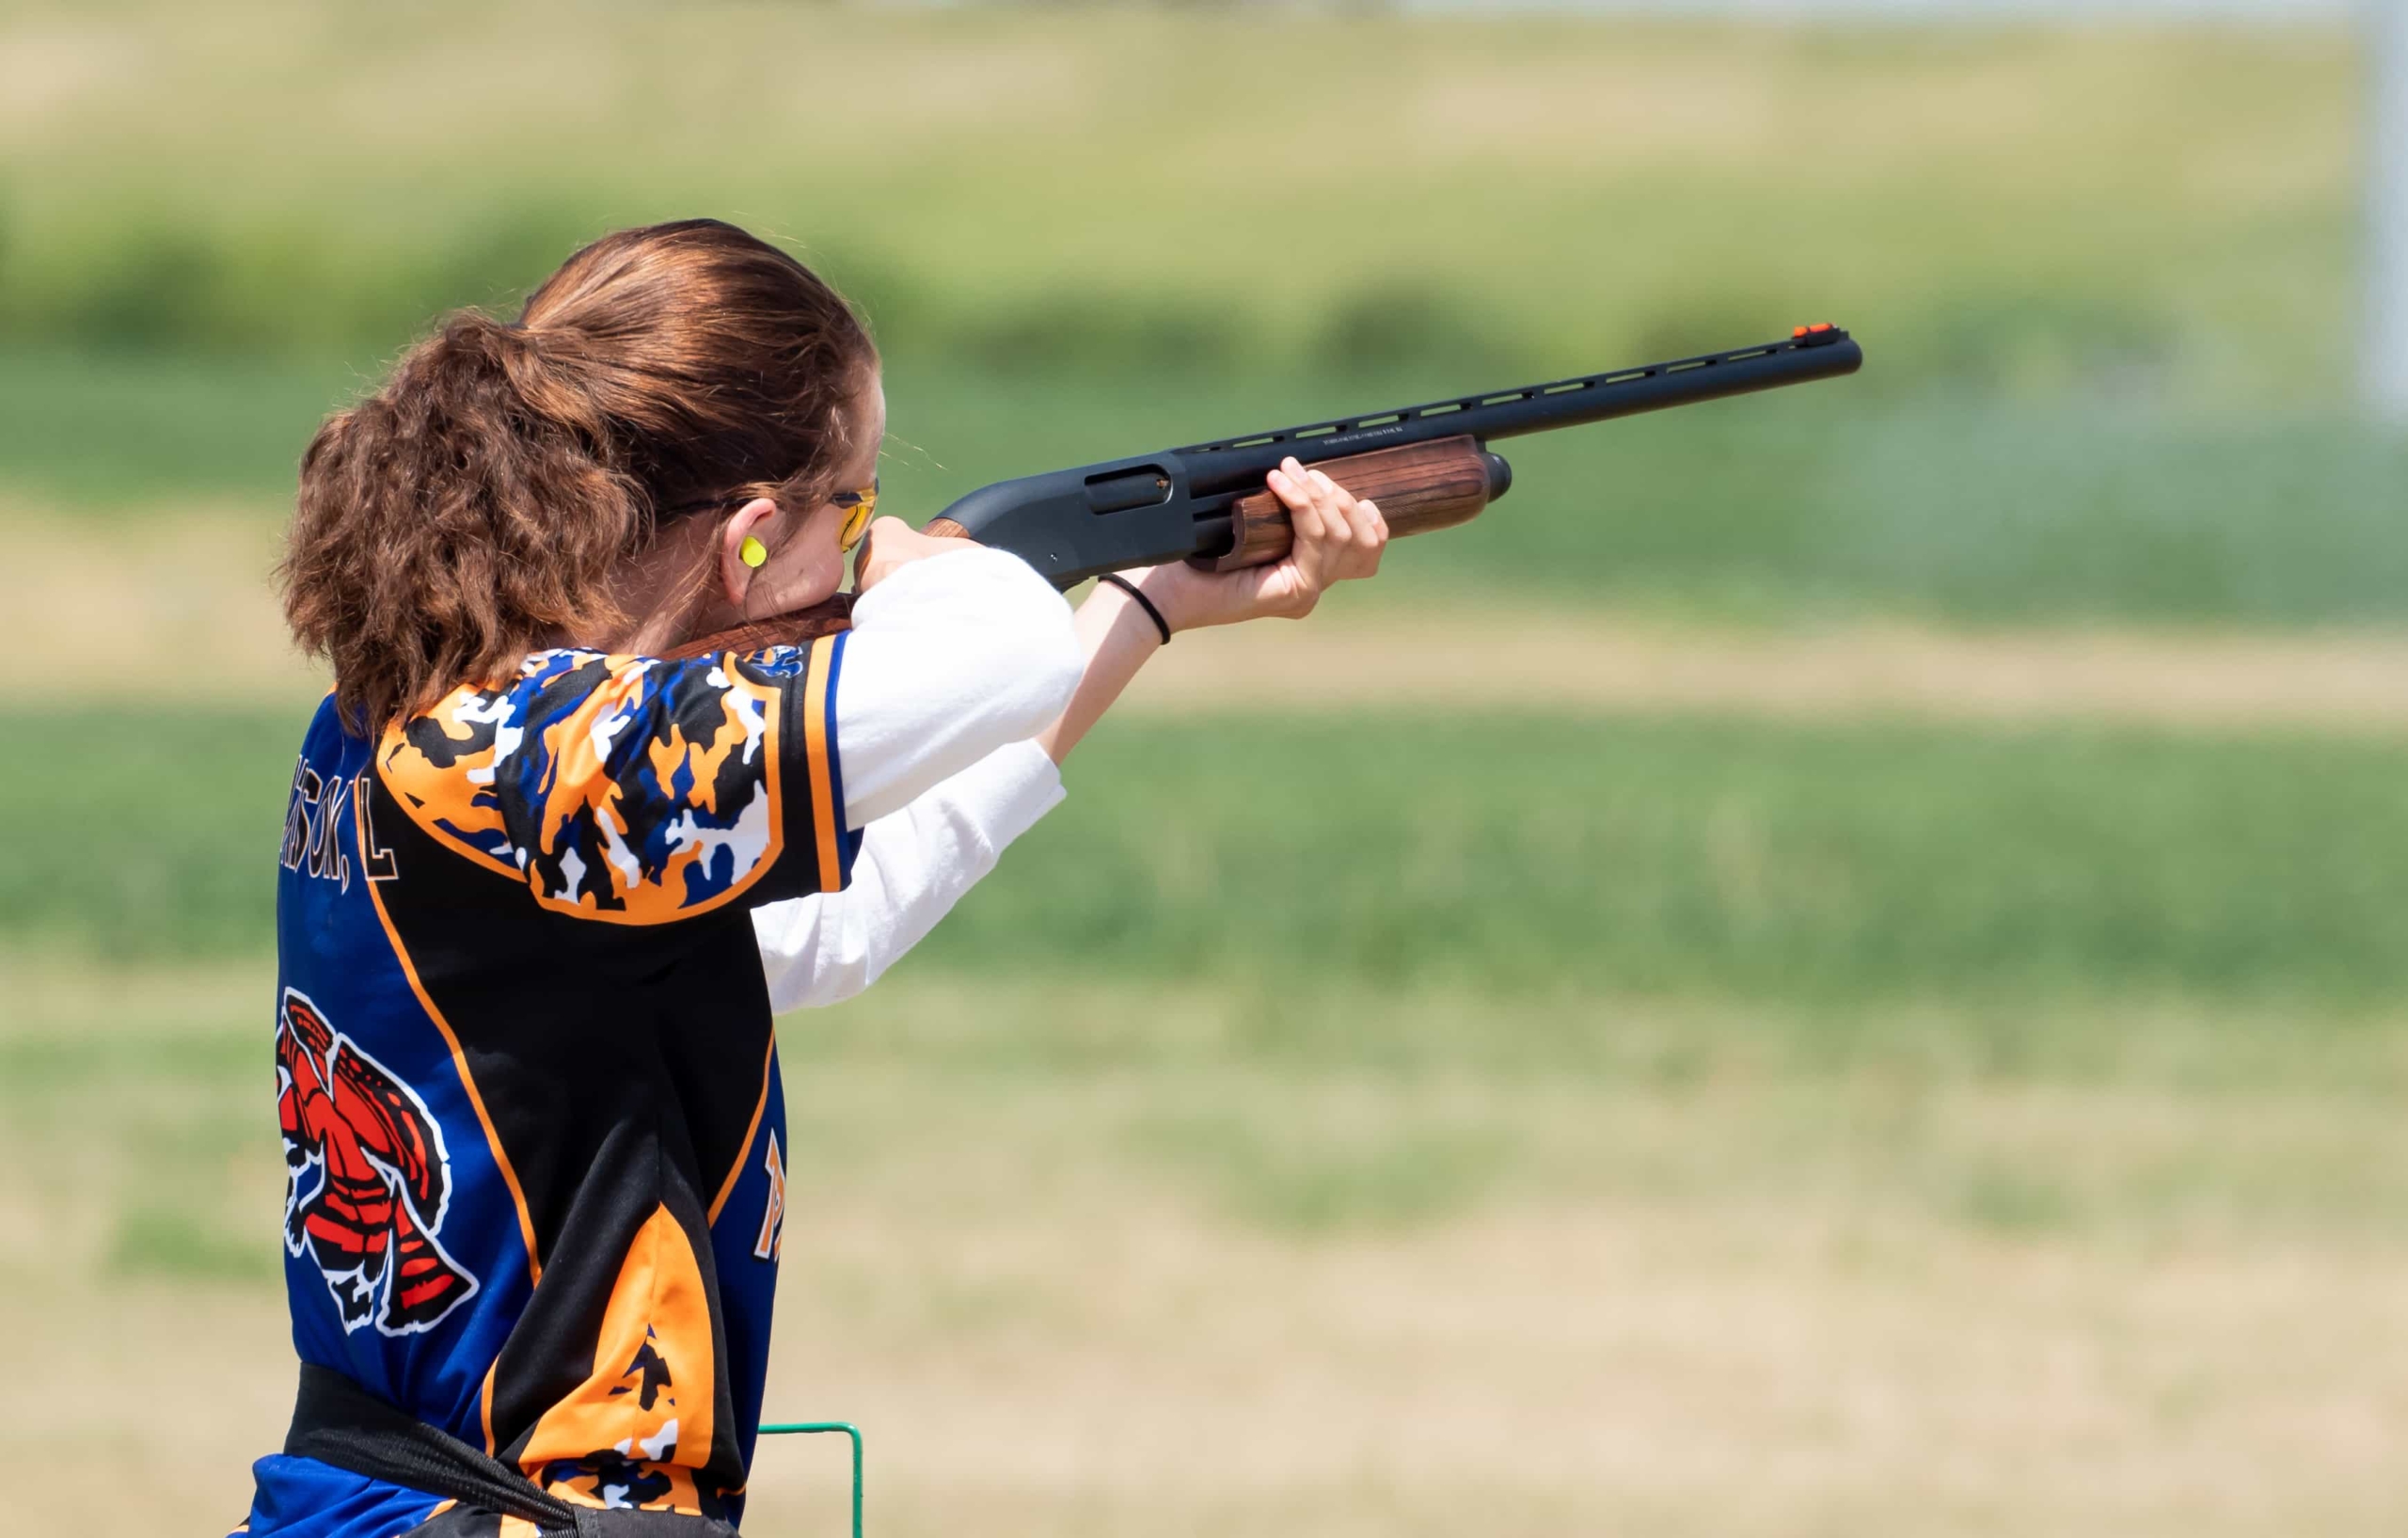 A girl is shooting a gun in an open field.